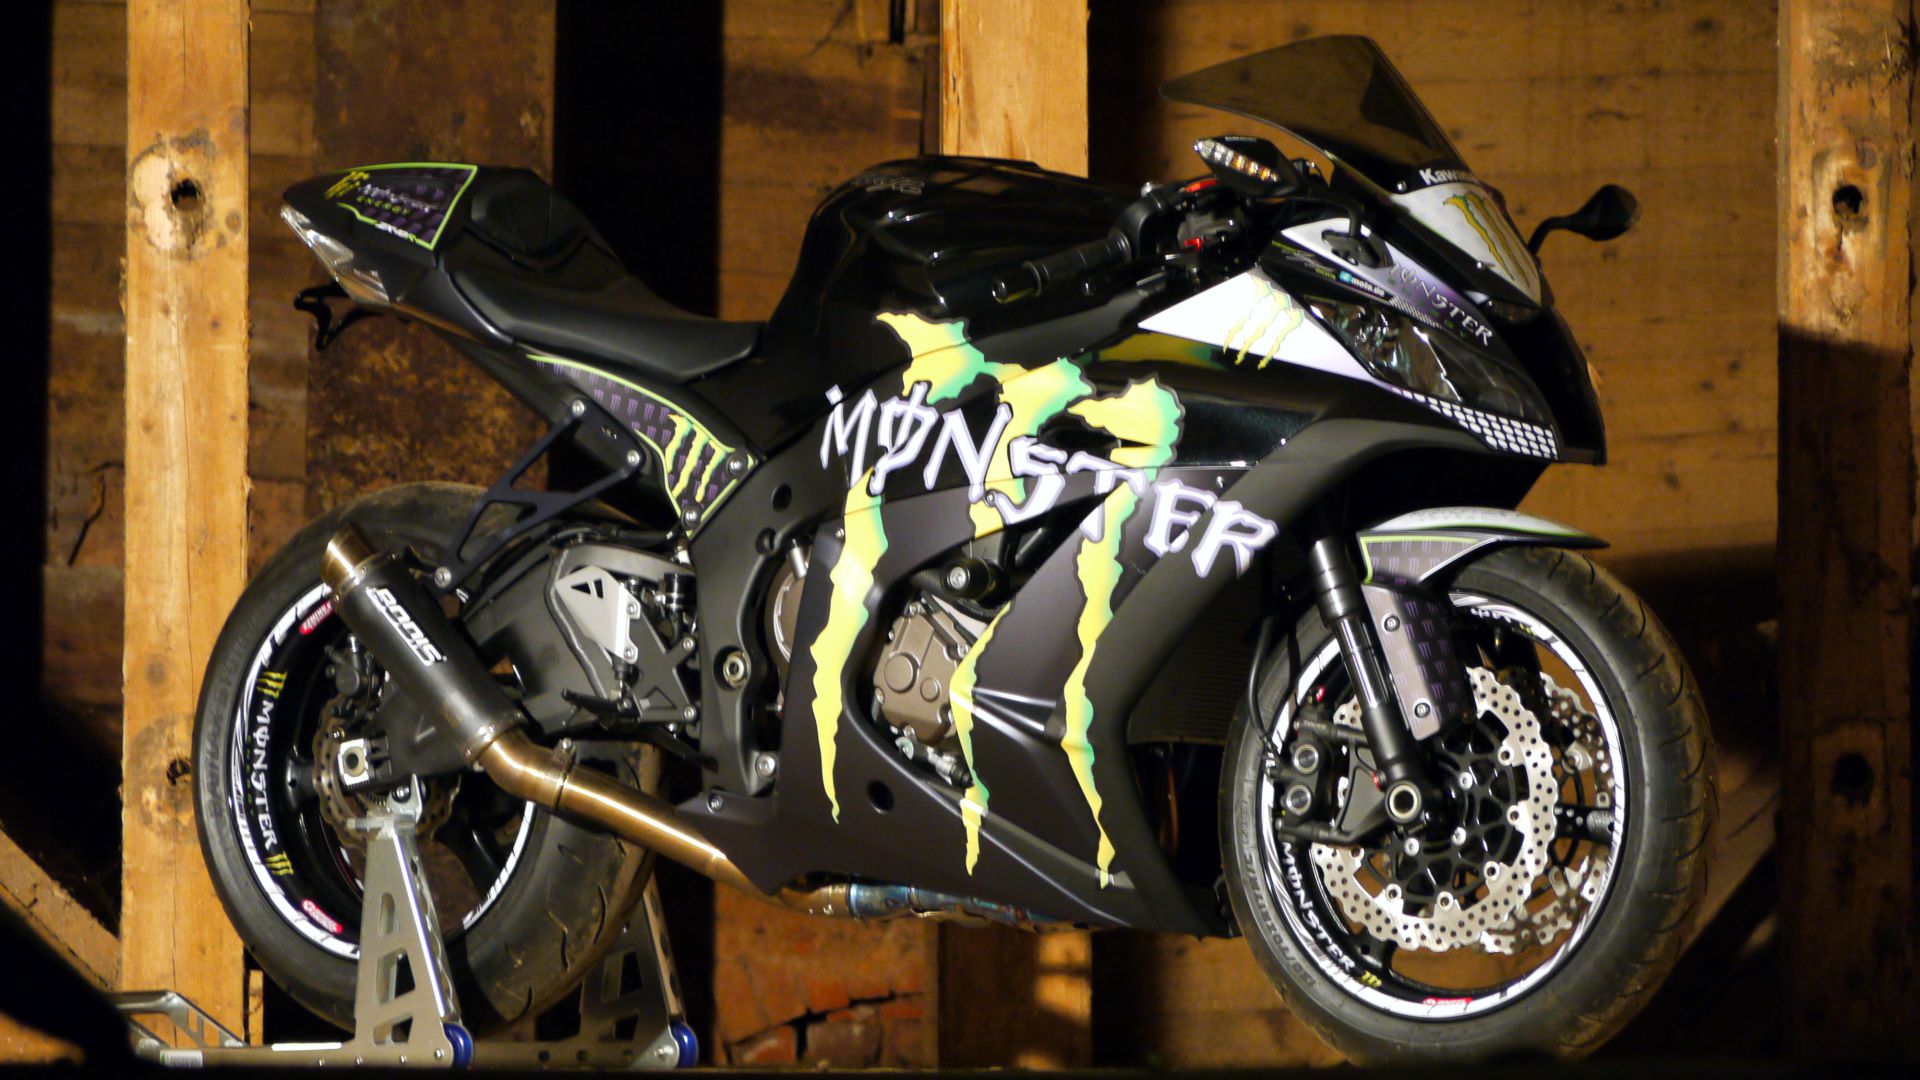 https://4moto.de/wp-content/uploads/2018/10/kawasaki-zx10r-4moto-design-monster-energy-dekorkit-superbike-stickerkit-folierung-wrapping-template-1.jpg